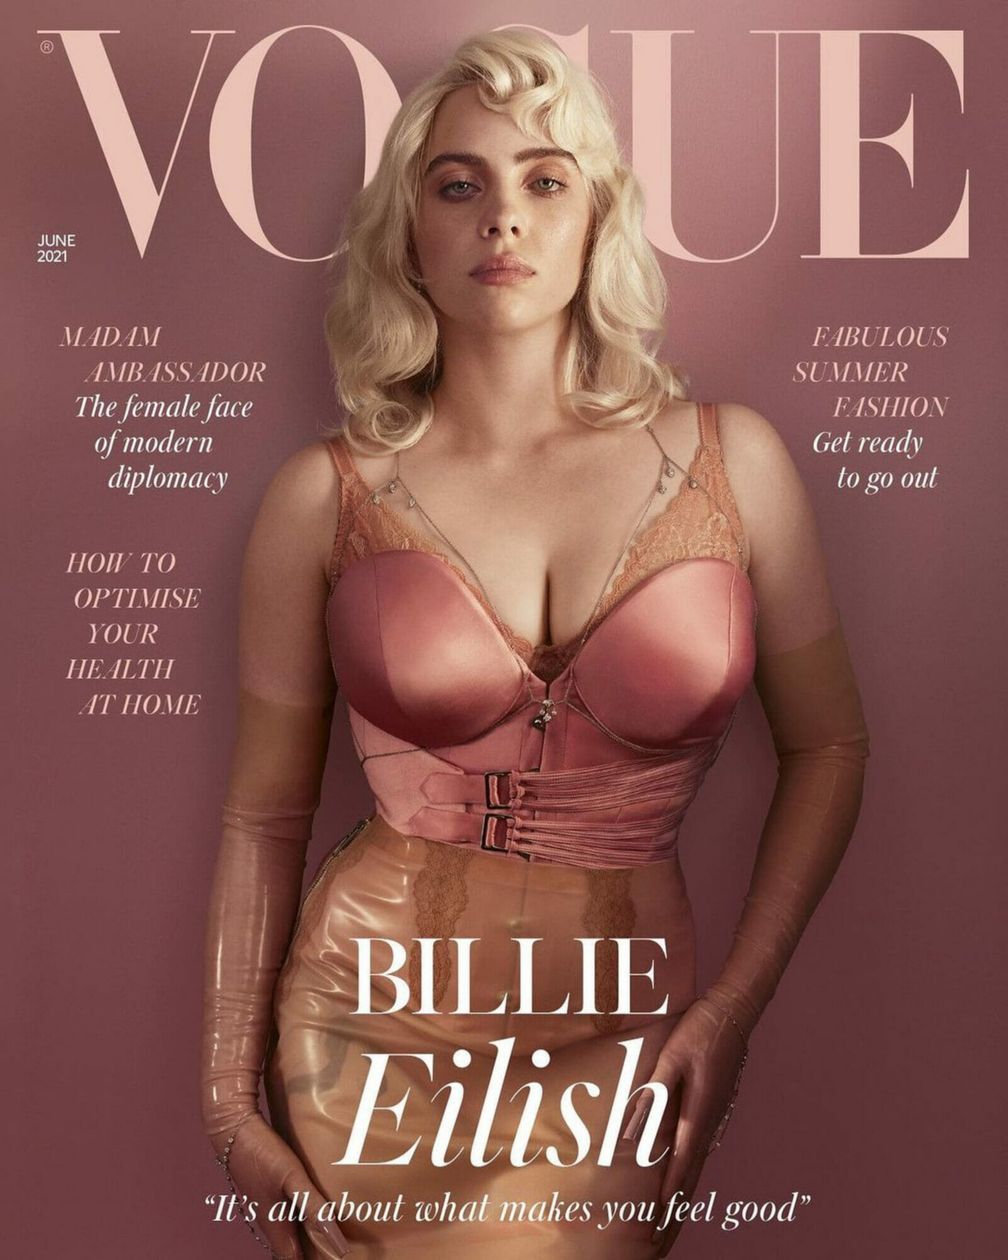 Билли Айлиш в цепочке от Jacquie Aiche на обложке июньского номера британского журнала Vogue